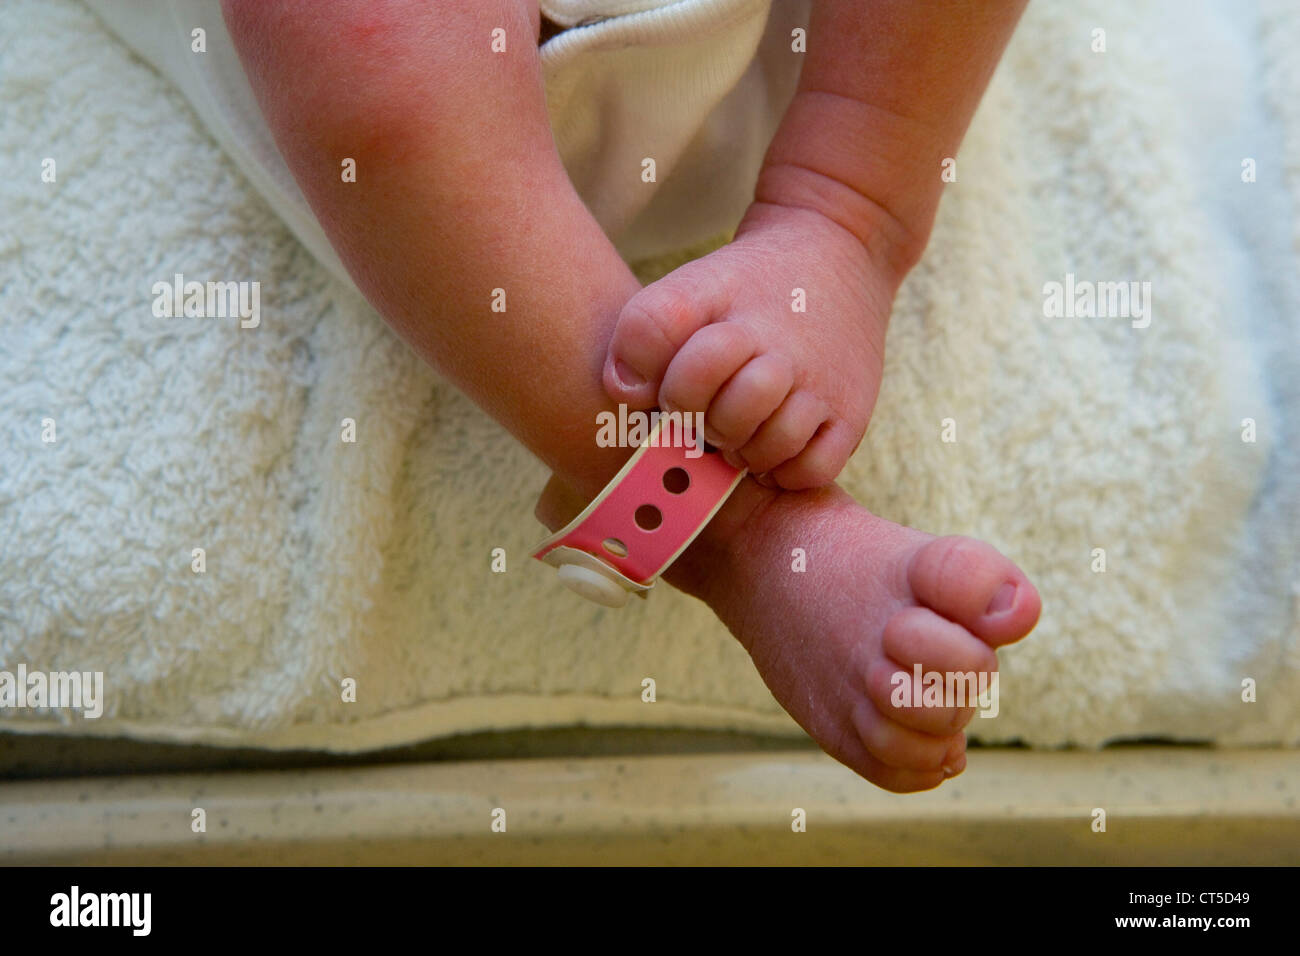 FOOT OF NEWBORN BABY Stock Photo